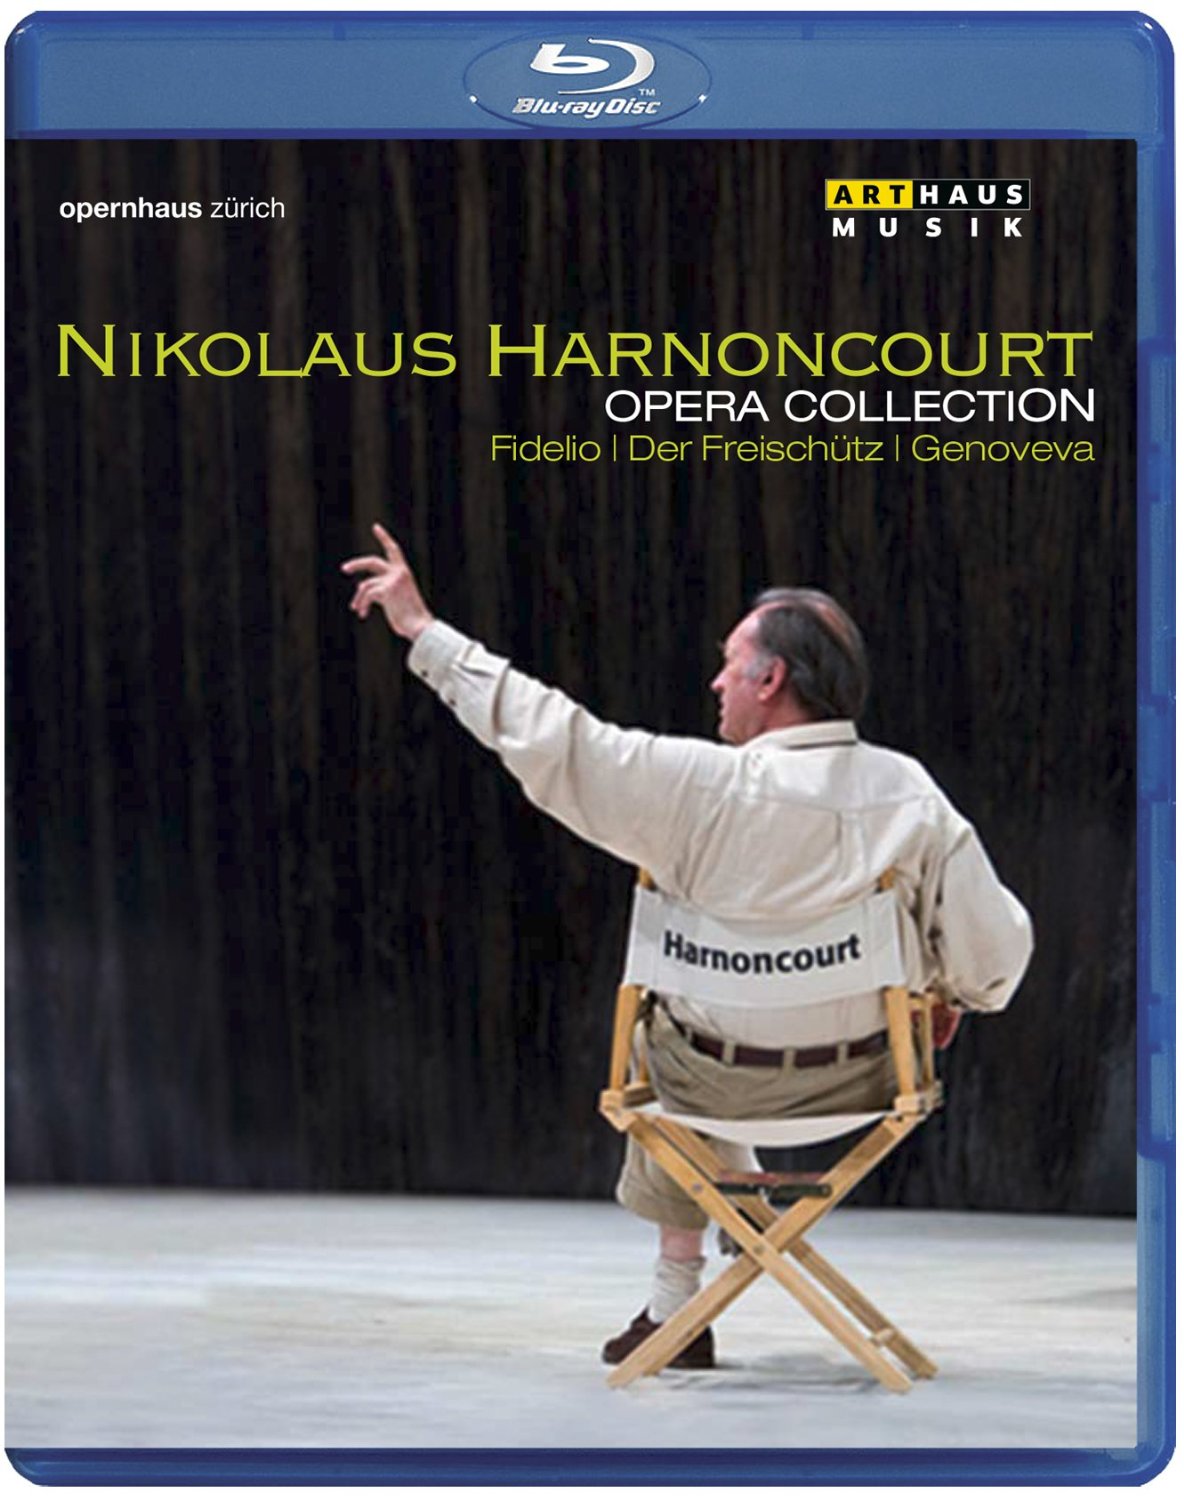 Music Blu-Ray Nikolaus Harnoncourt: Opera Collection - Fidelio, Der Freischutz, Genoveva NUOVO SIGILLATO, EDIZIONE DEL 29/09/2014 SUBITO DISPONIBILE